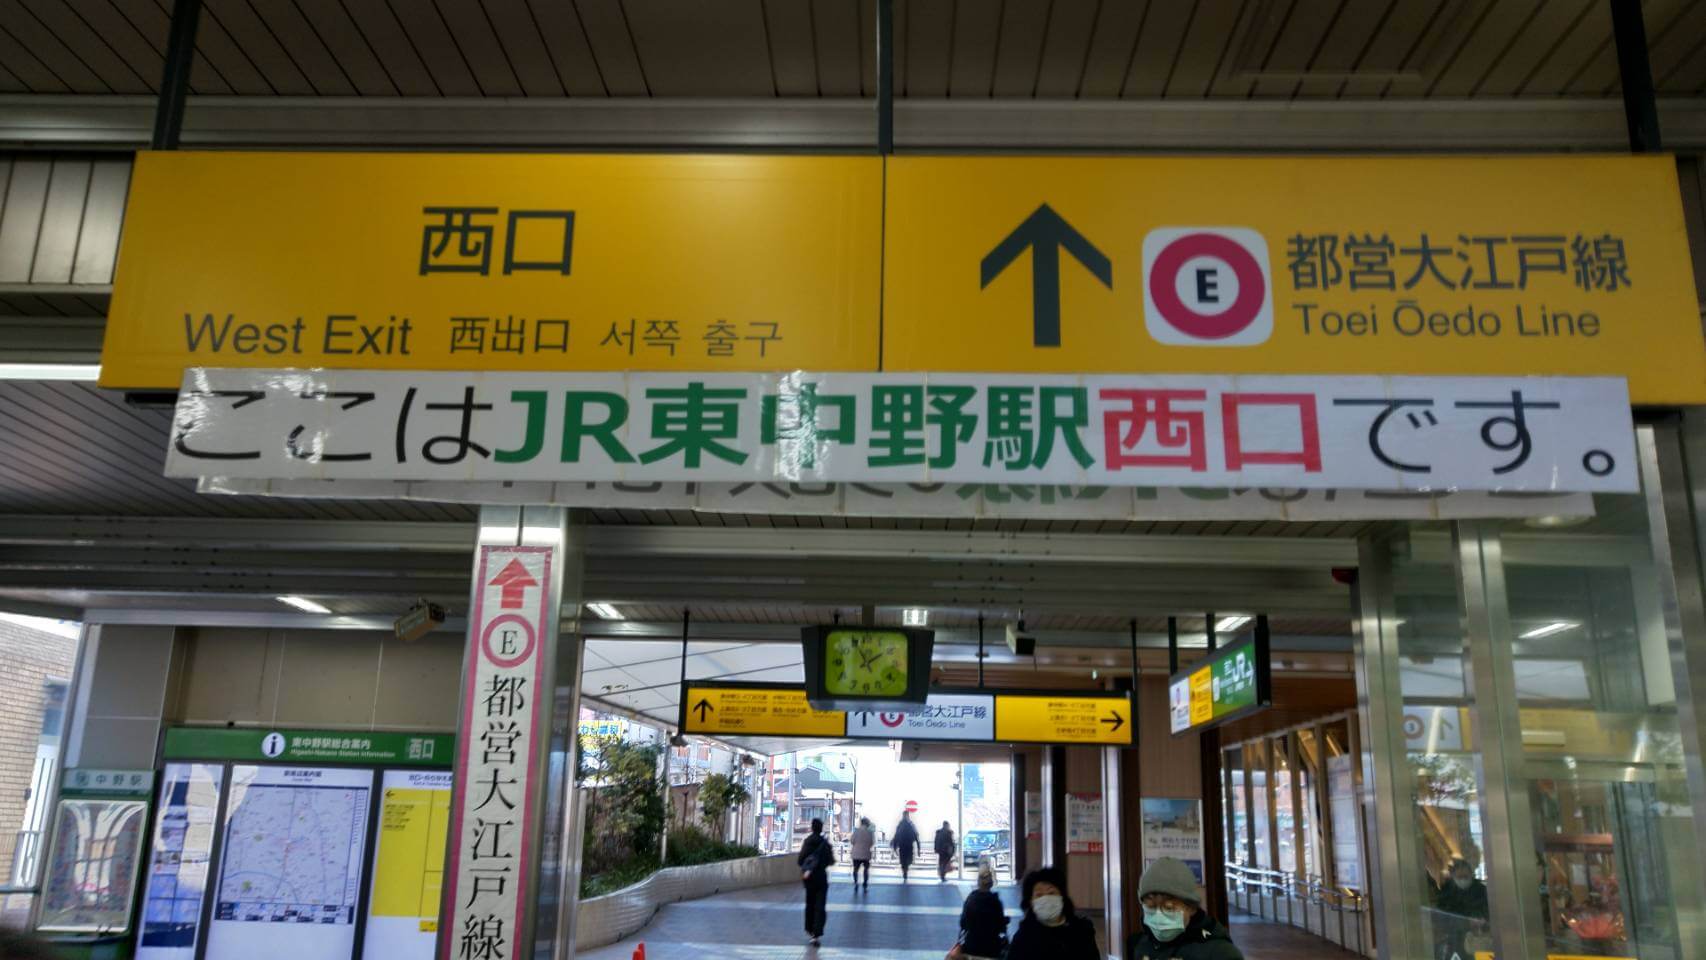 JR「東中野駅」西口改札